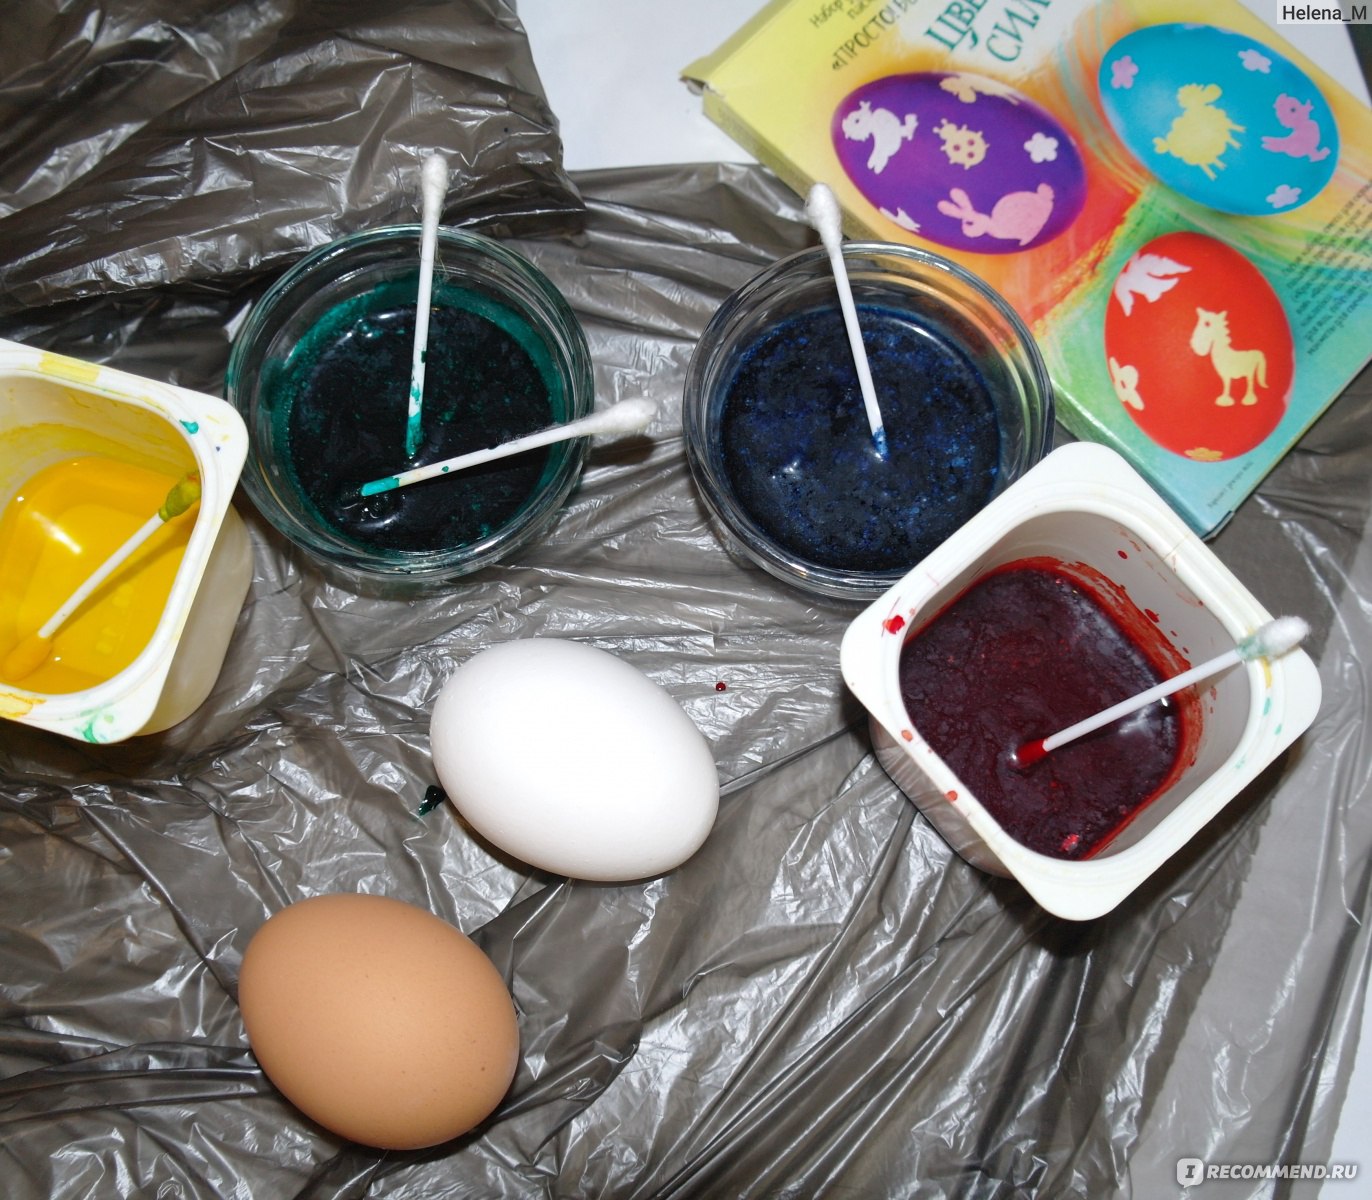 Чем покрасить яйца. Набор для окрашивания яиц. Красим яйца пищевыми красителями. Емкость для окрашивания яиц. Кирстки для покраски яиц.